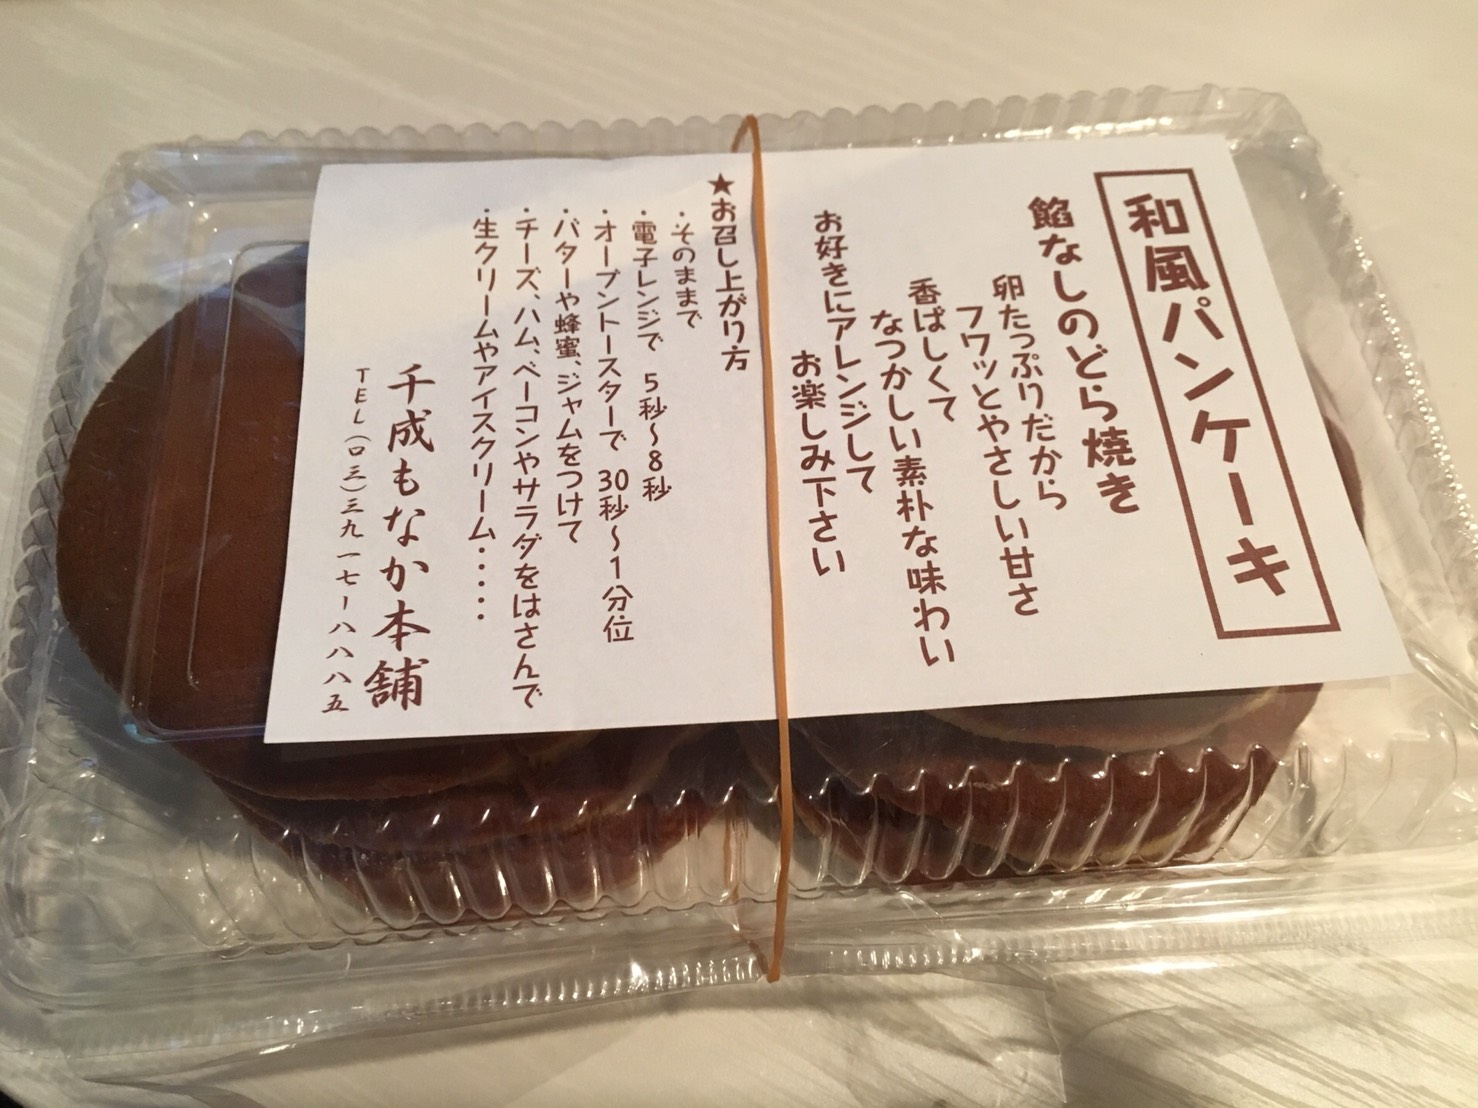 【大塚駅】もなか屋さん「千成もなか本舗」の200円のパンケーキのパッケージ